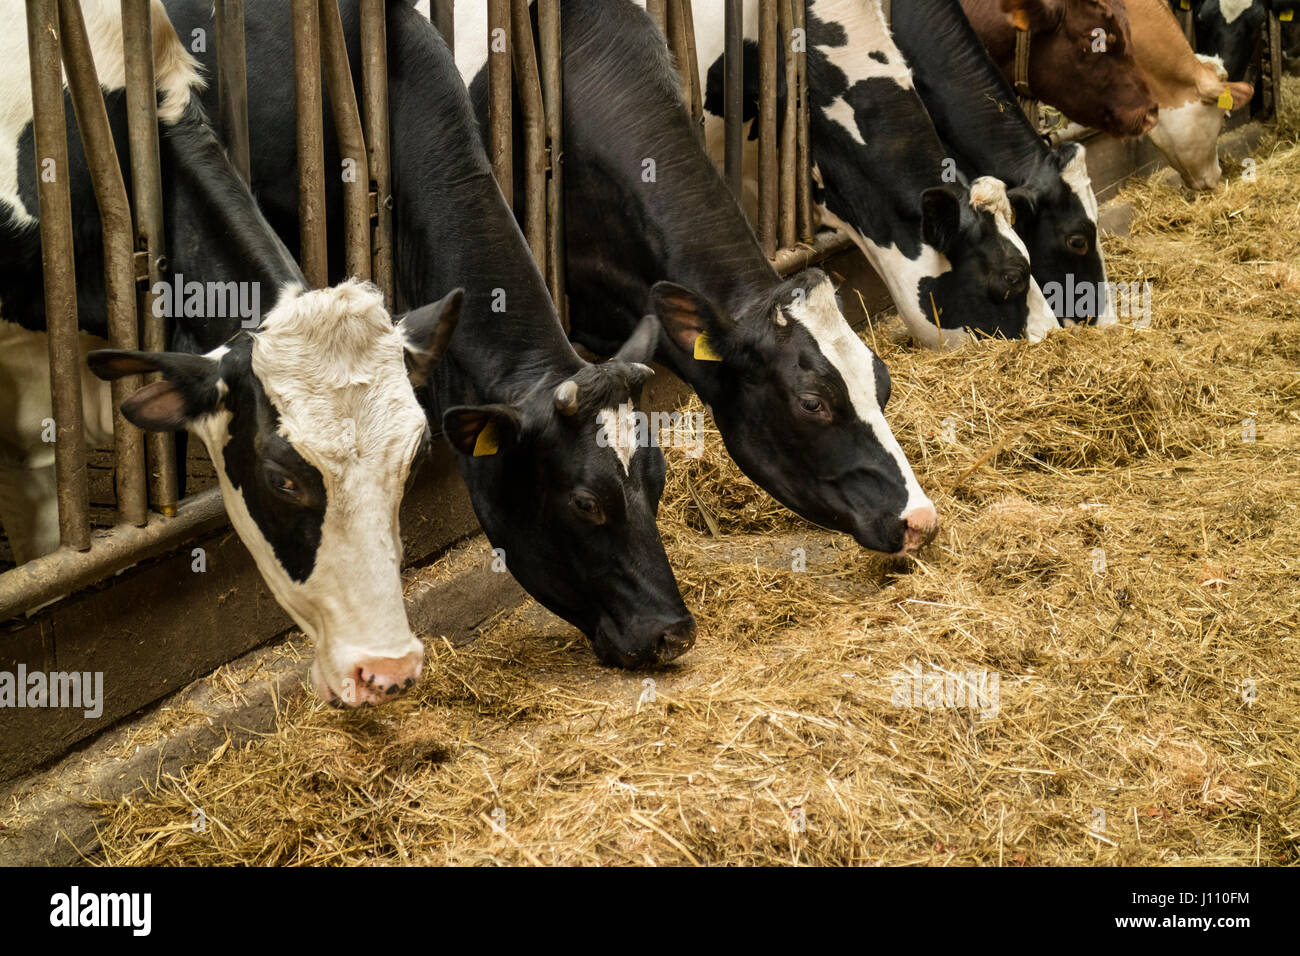 L'alimentation des vaches dans la grange à foin d'une ferme laitière Banque D'Images